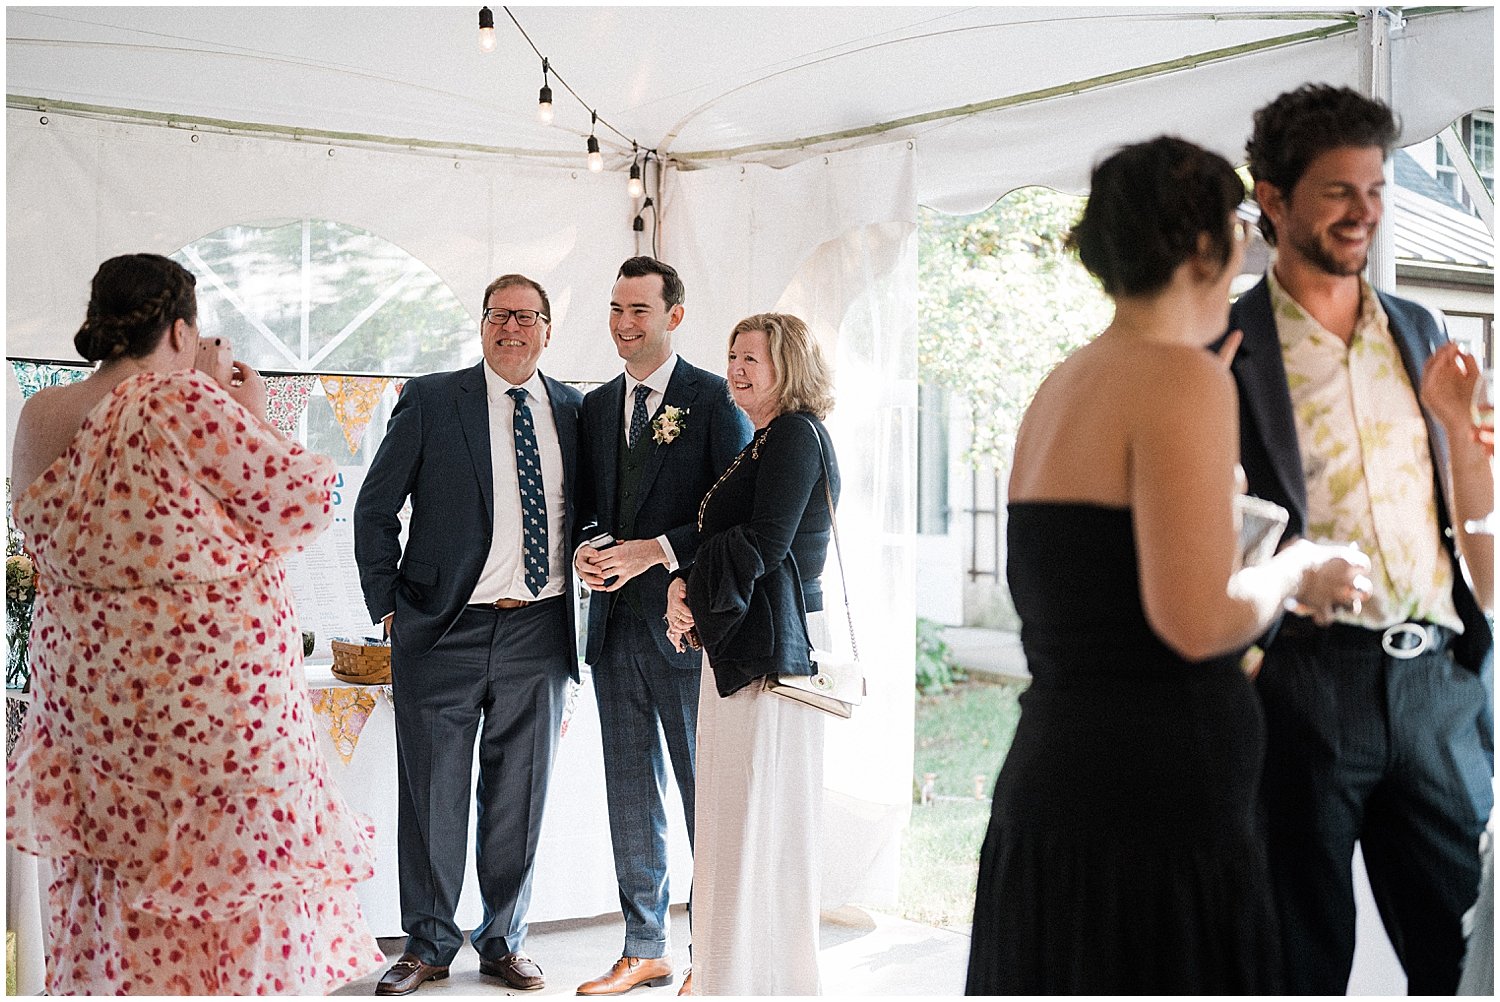 The Orrmont Estate Wedding | Piqua, Ohio